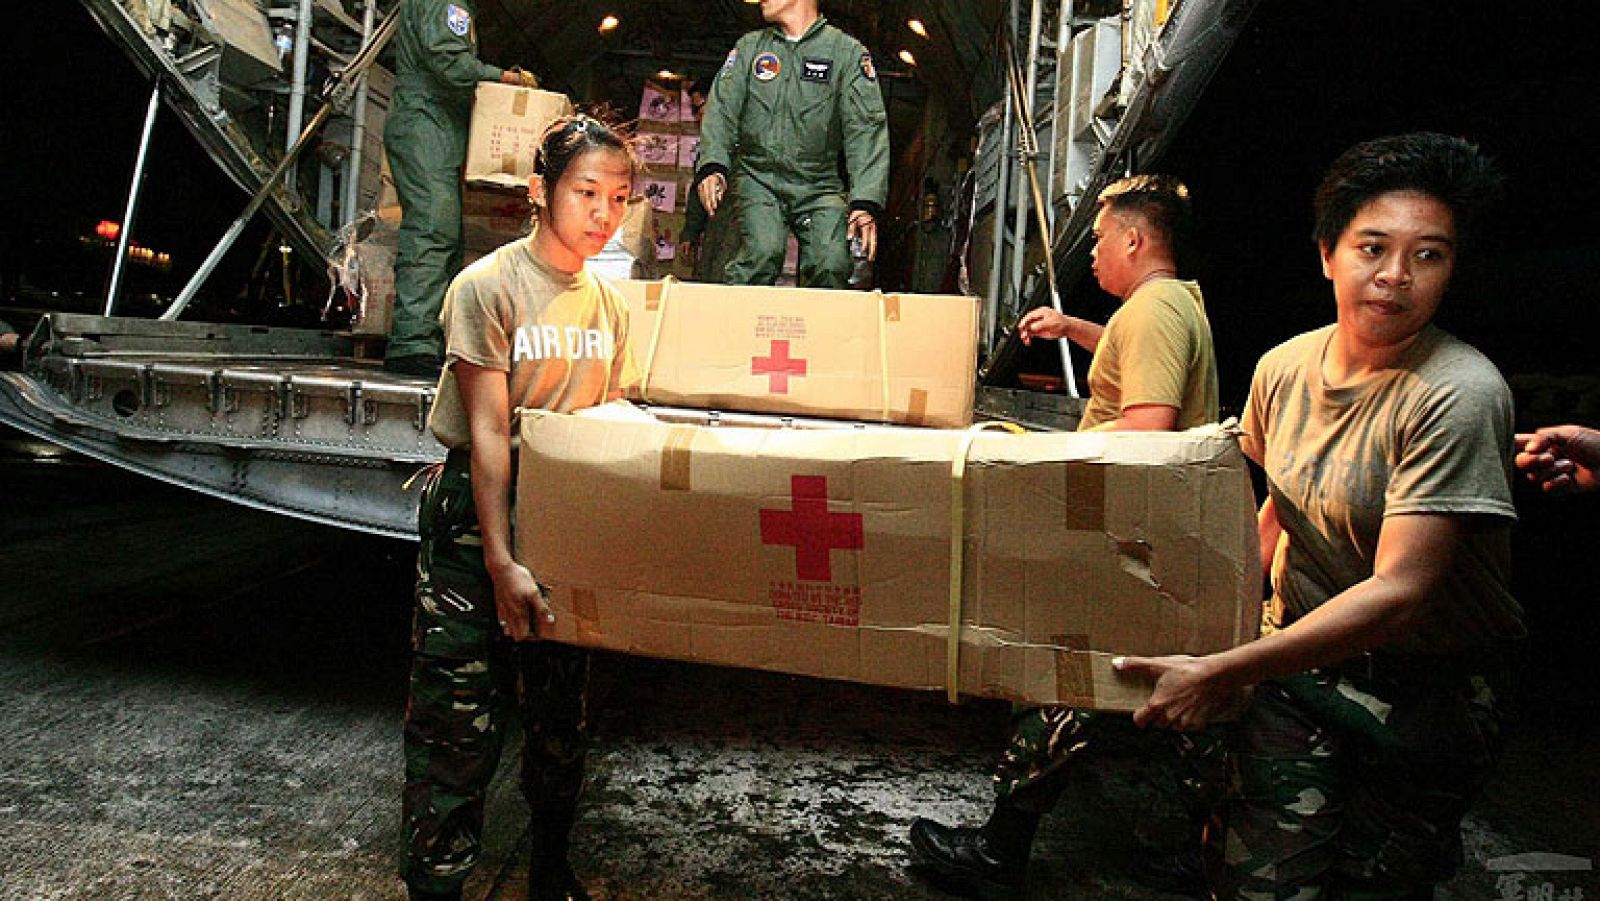  Las autoridades filipinas hablan de momento de 2.275 fallecios por el tifón Haiyan.  Además hay 3.300 heridos y más de medio millón de personas sin hogar. La desesperación por salir ha colapsado el aeropuerto. Miles de personas se agolpan durante horas a la espera de poder subir a unos de los aviones que llegan con ayuda. Y también son interminables las colas para recibir alimento. El gobierno ha autorizado la apertura de fosas comunes para enterrar a los muertos y evitar enfermedades y epidemias. El reparto de ayuda humanitaria está resultando lento porque es complicado acceder a algunas de las zonas afectadas. 